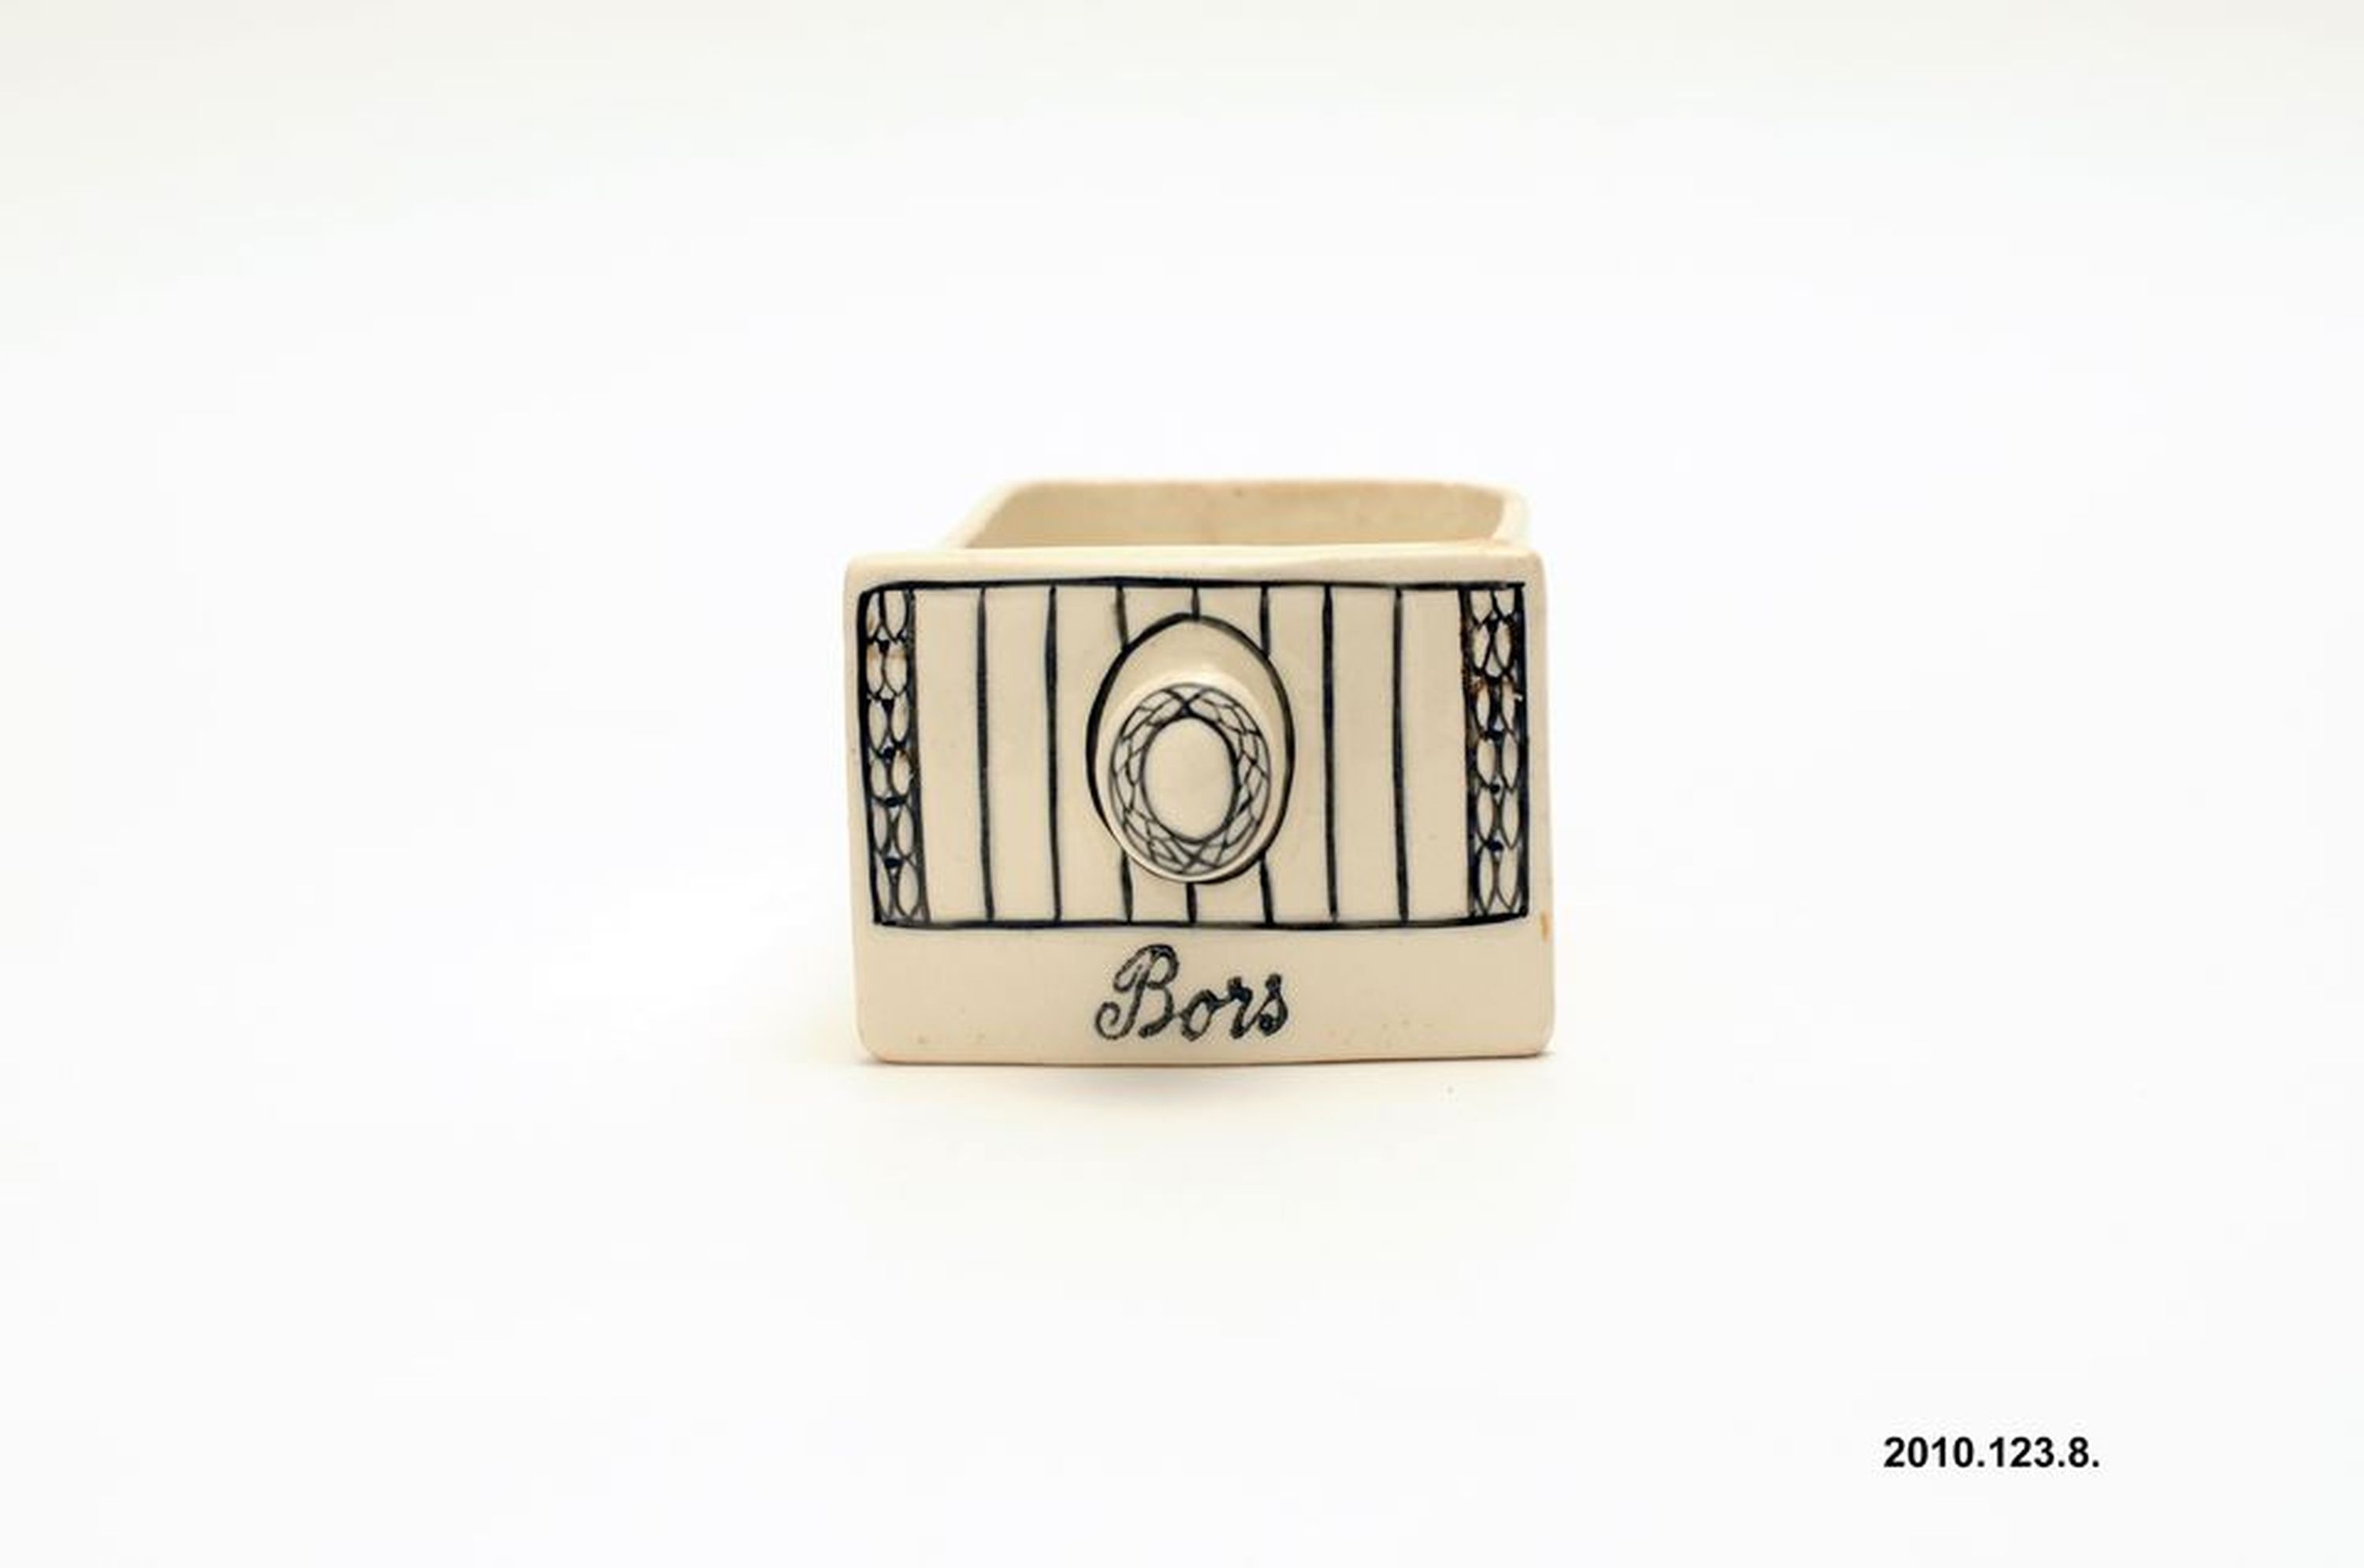 Kerámia fűszertartó fiók "Bors" felirattal (Óbudai Múzeum CC BY-NC-SA)